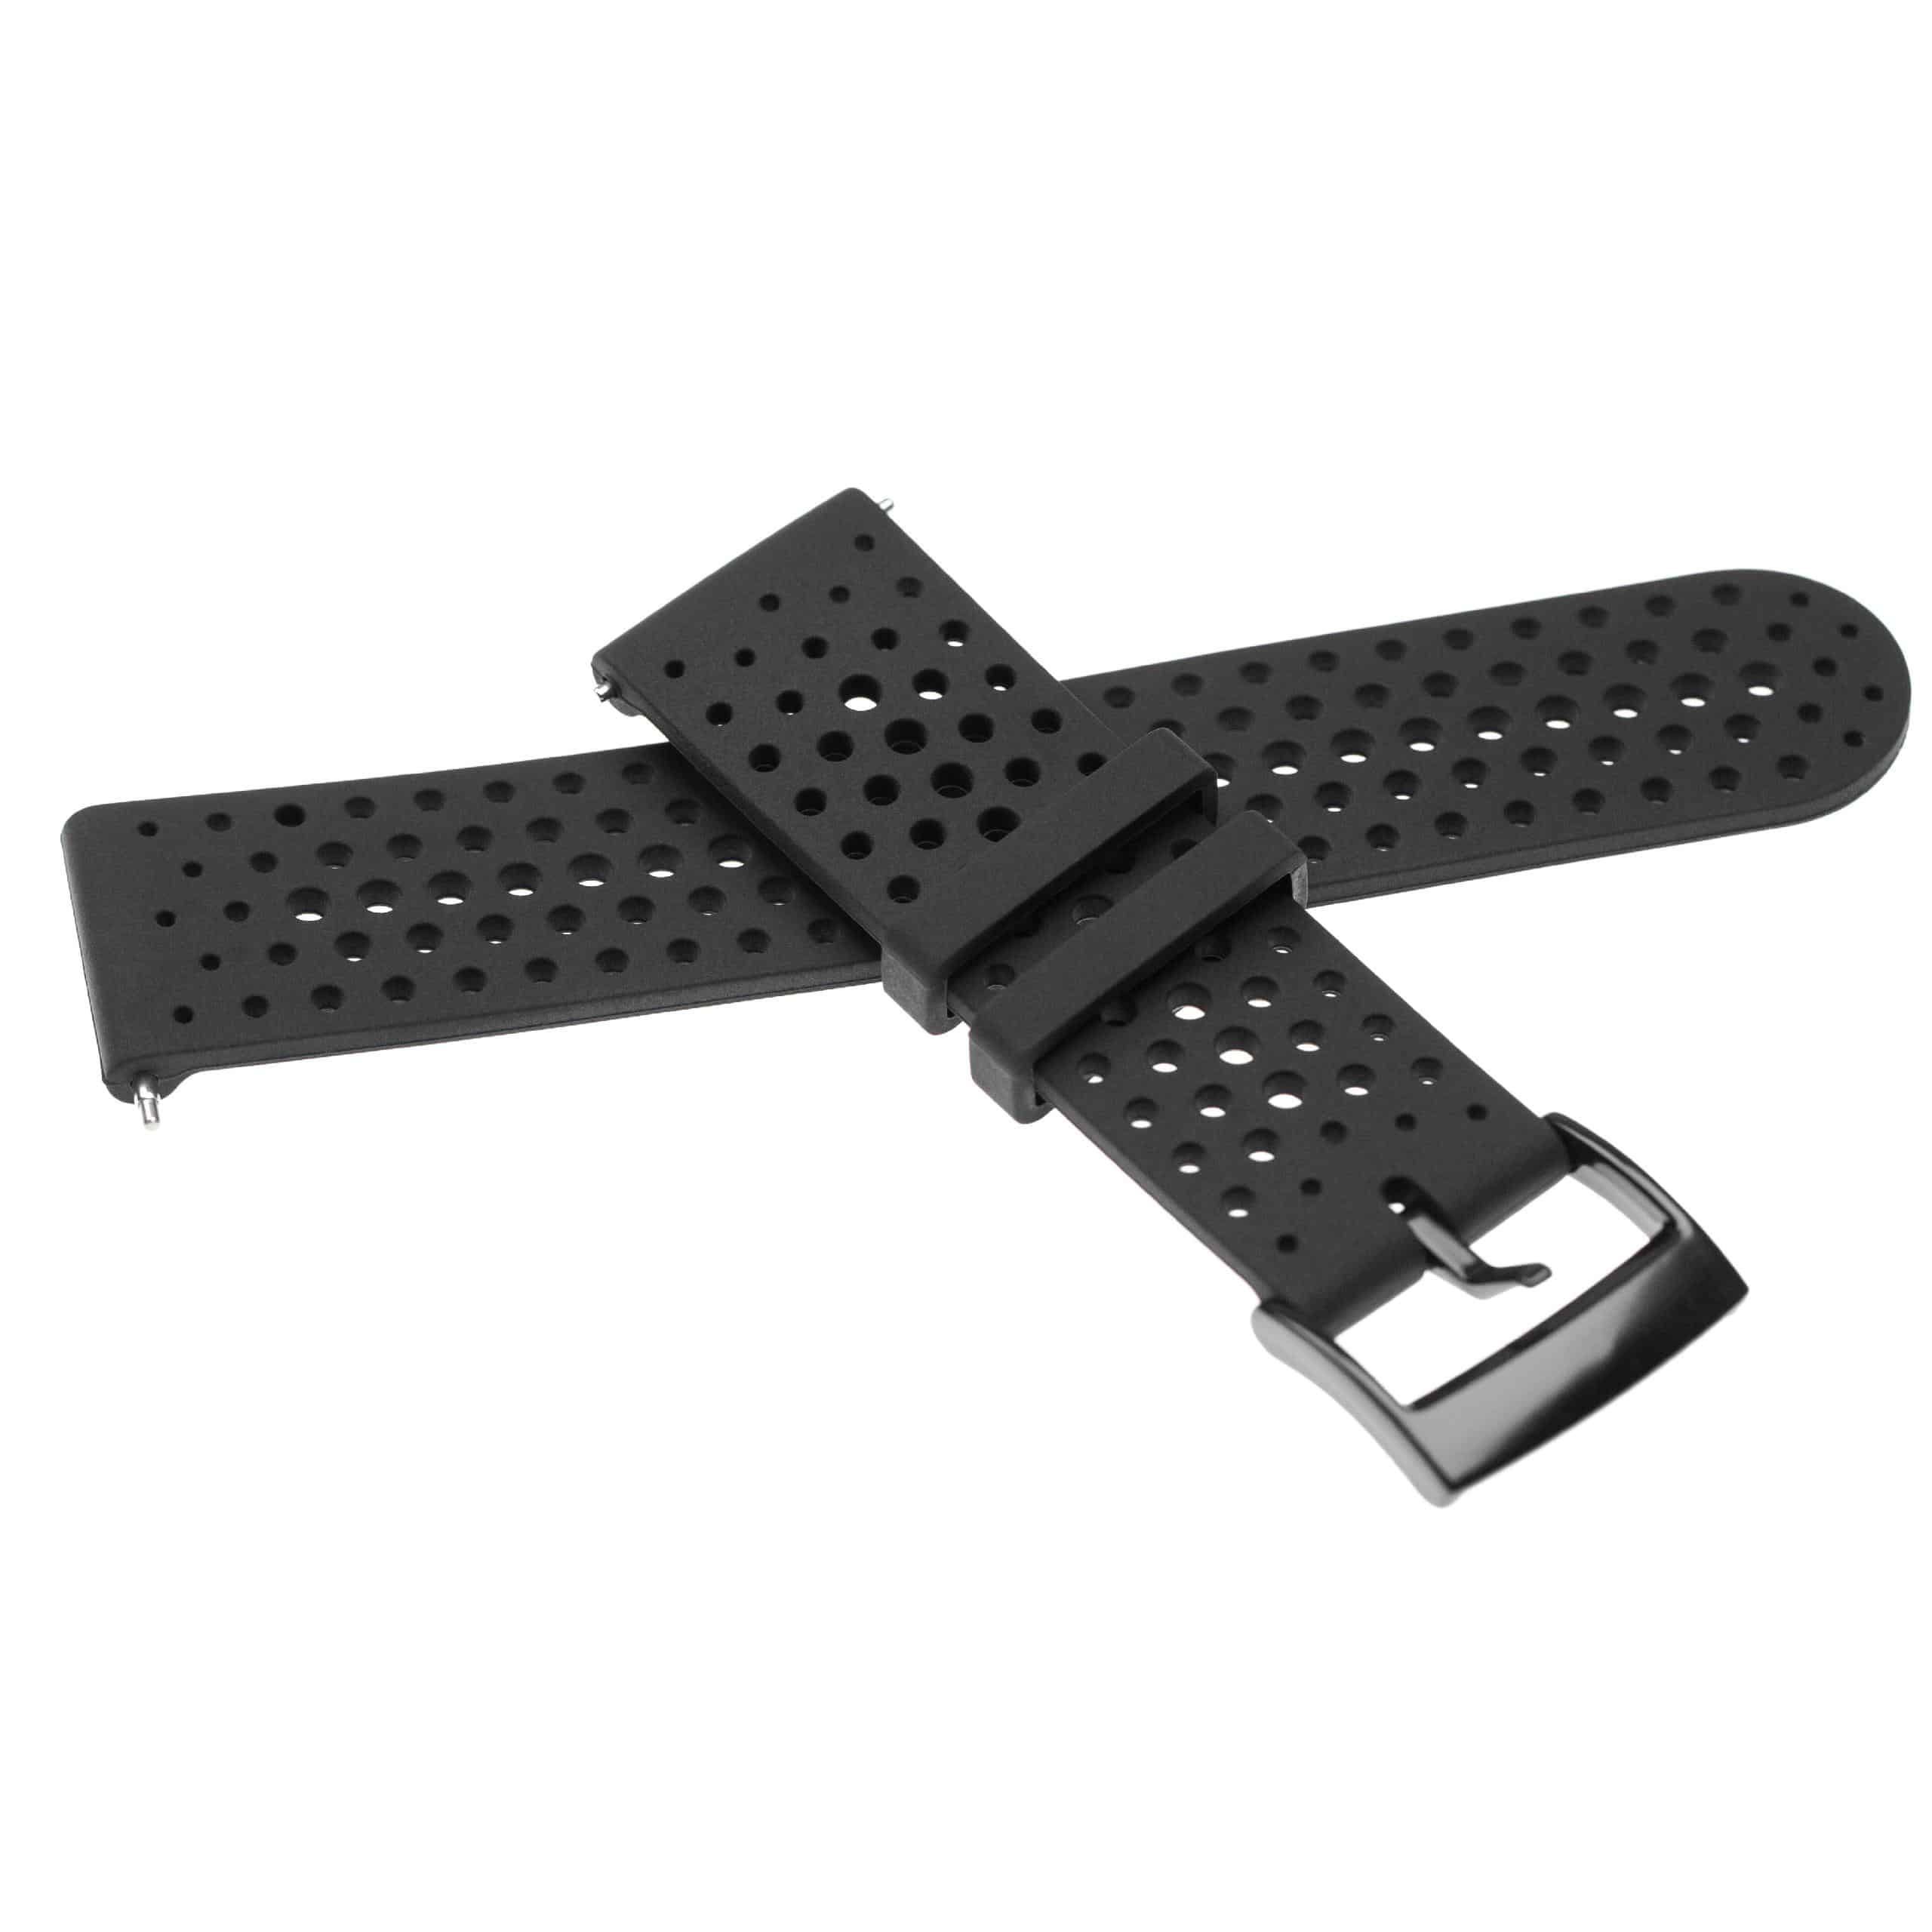 cinturino per Suunto Smartwatch - 13,4 + 9,5 cm lunghezza, 24mm ampiezza, silicone, nero